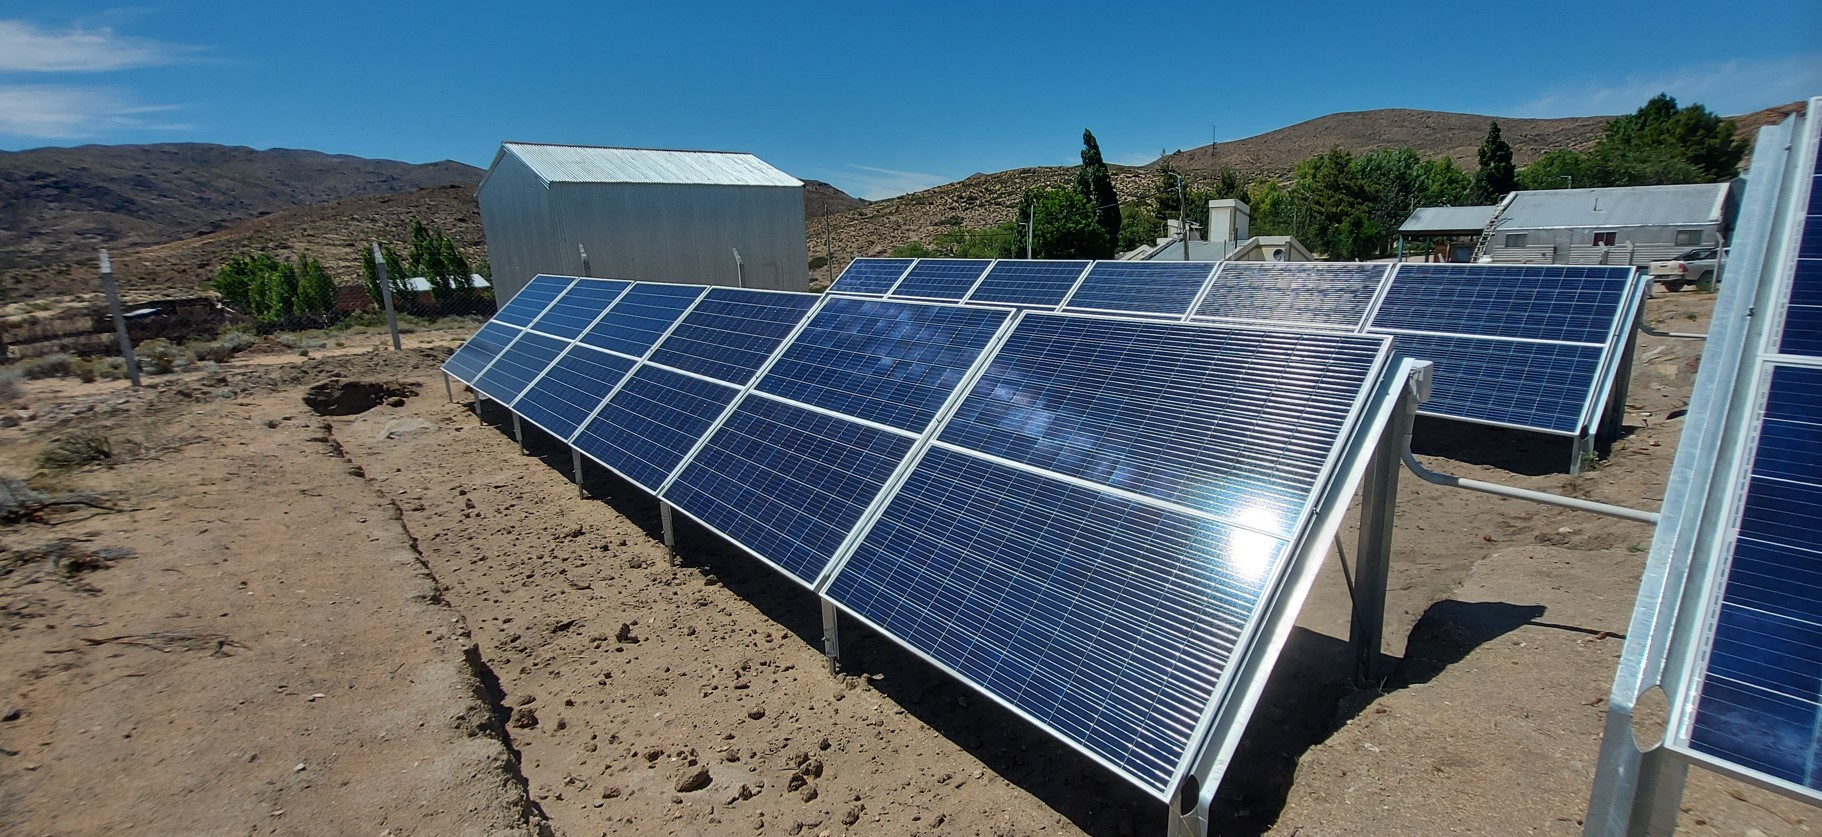 Permer ha presentato una gara d’appalto per due nuove mini-reti solari per alimentare il parco astronomico di Salta e la cittadina rurale di Catamarca